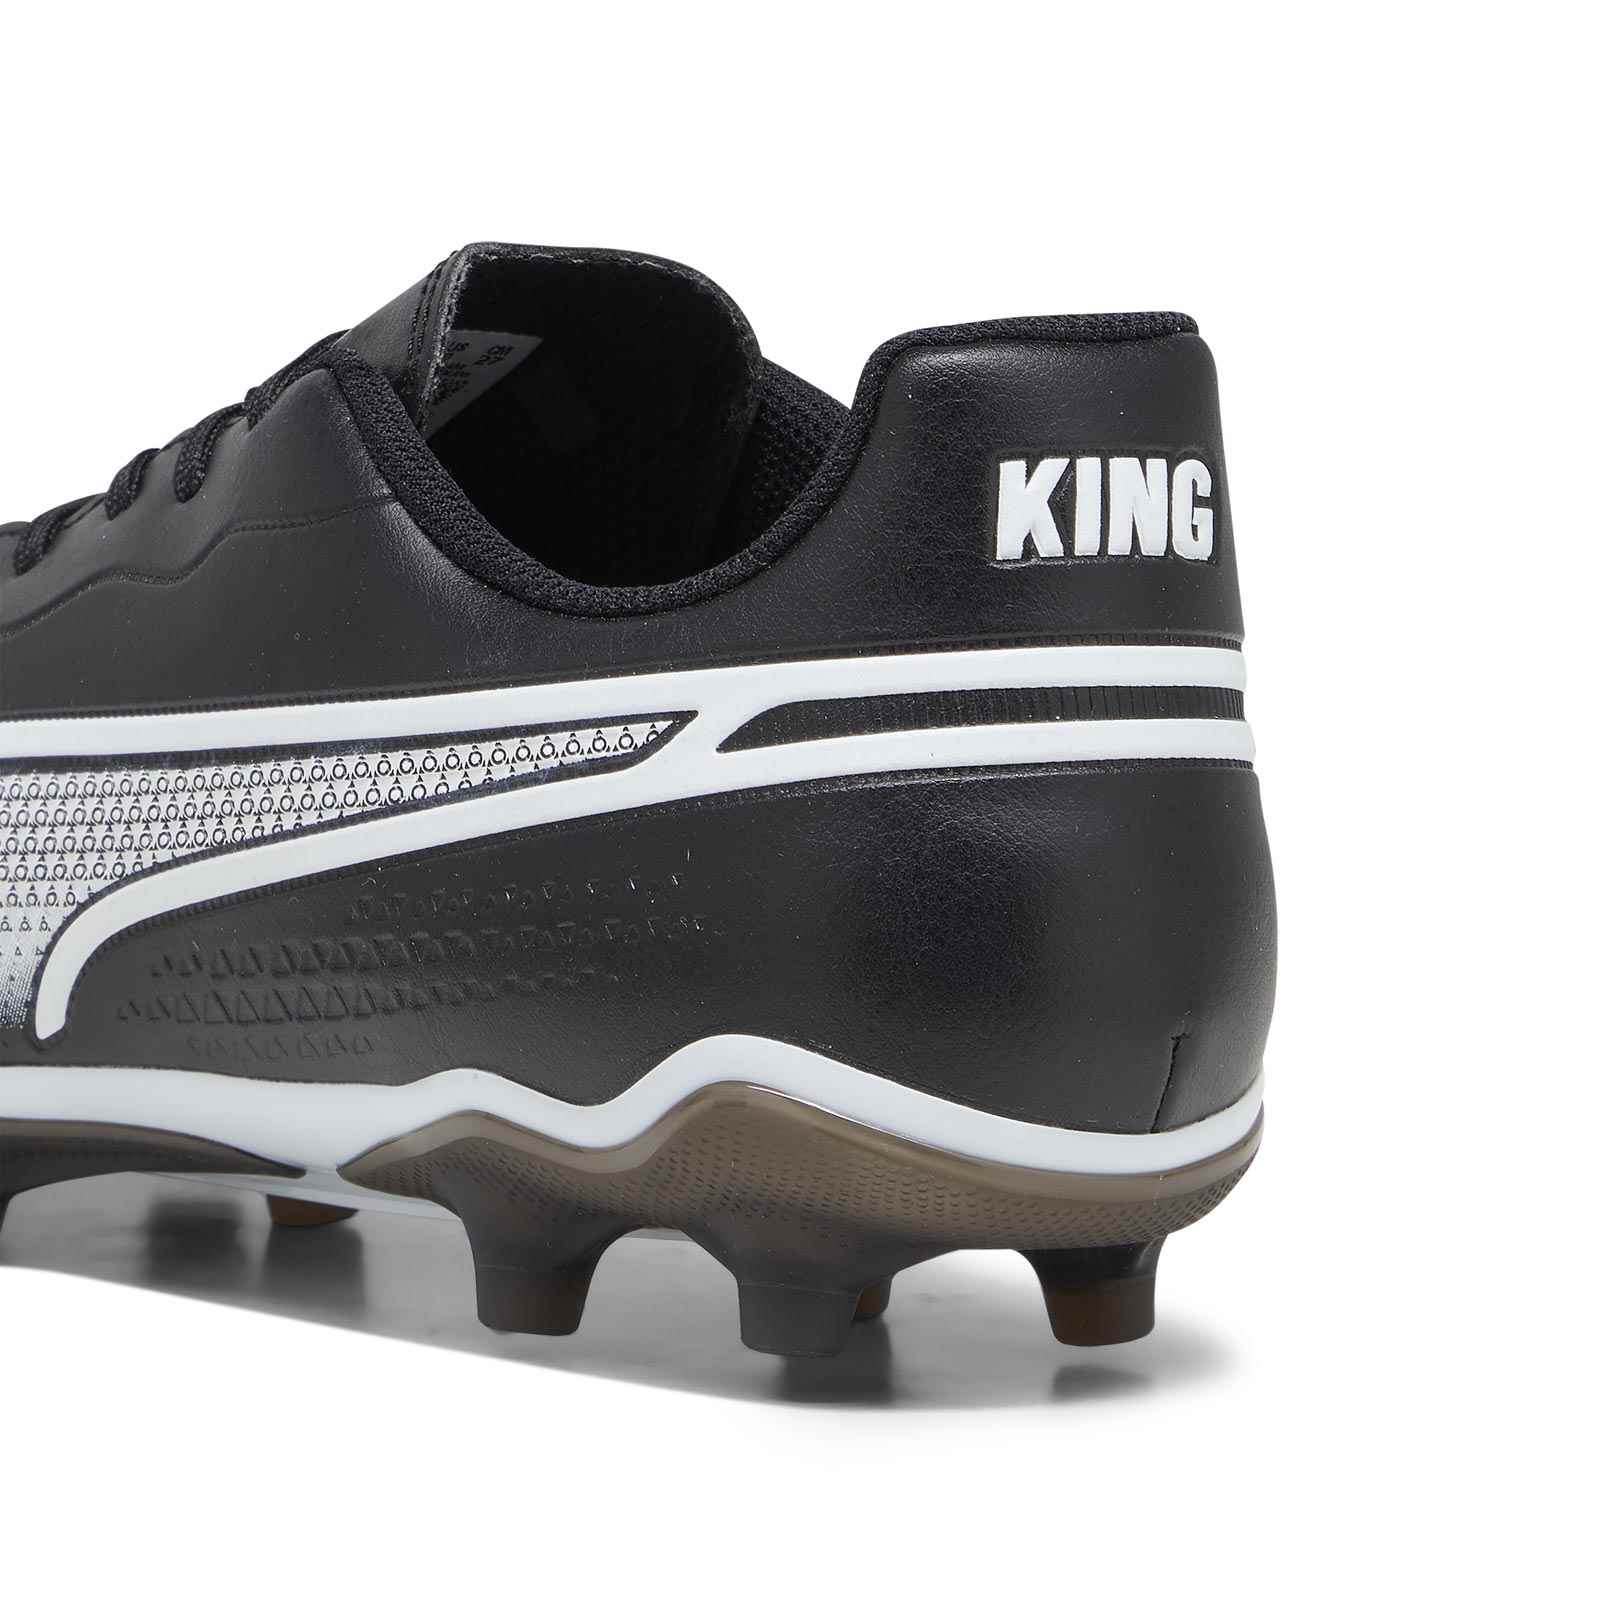 PUMA KING MATCH FIRM-GROUND FOOTBALL BOOTS